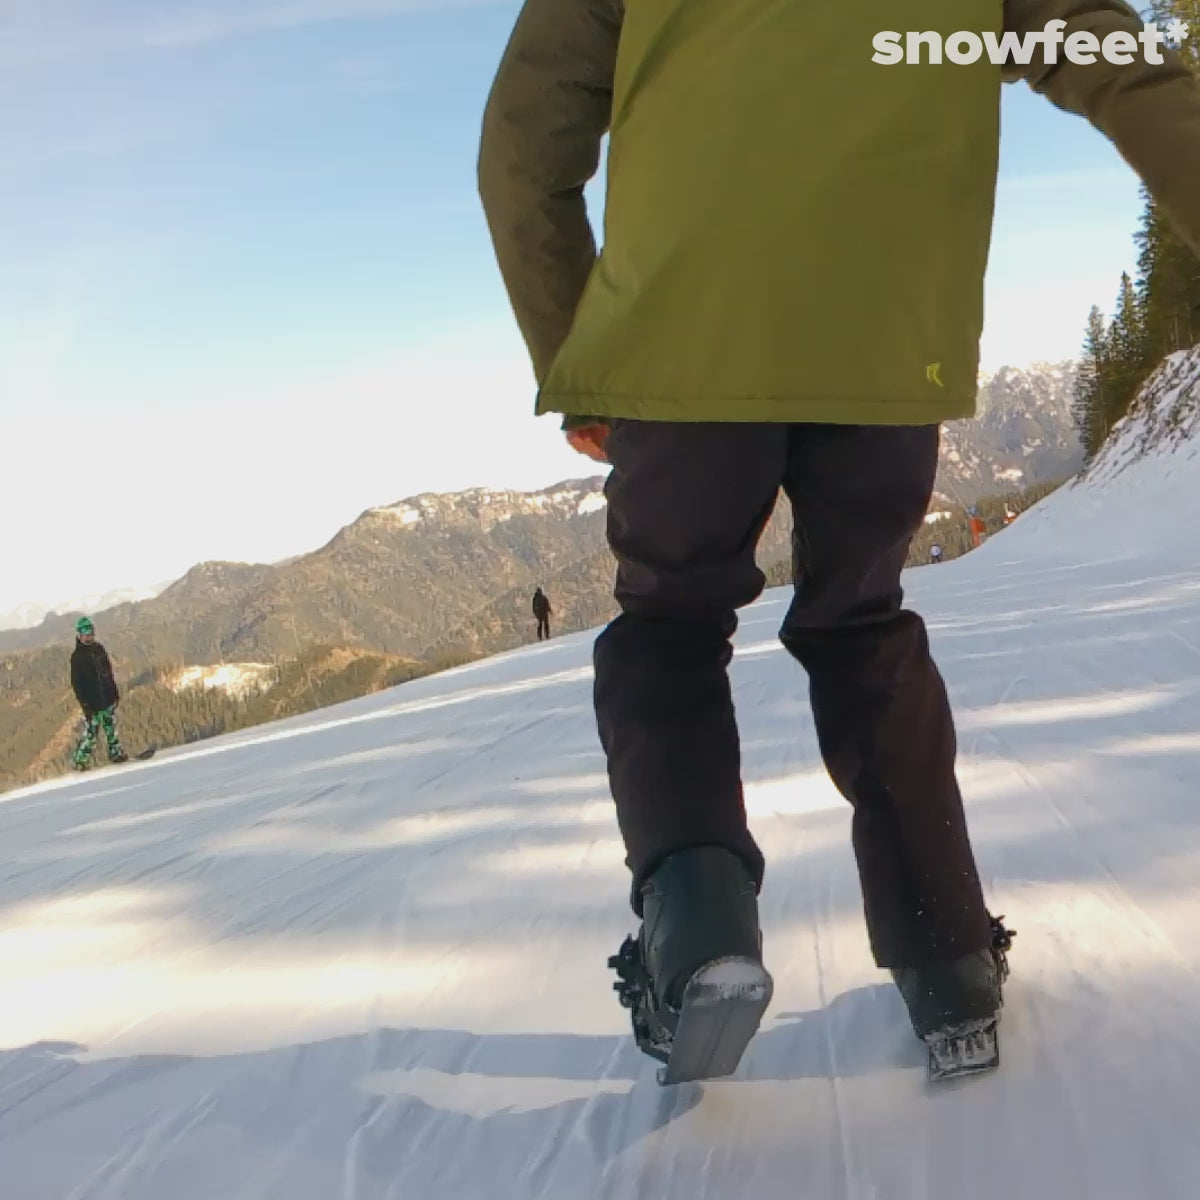 Snowfeet - Mini patins de ski pour la neige - Boutique officielle Snowfeet®